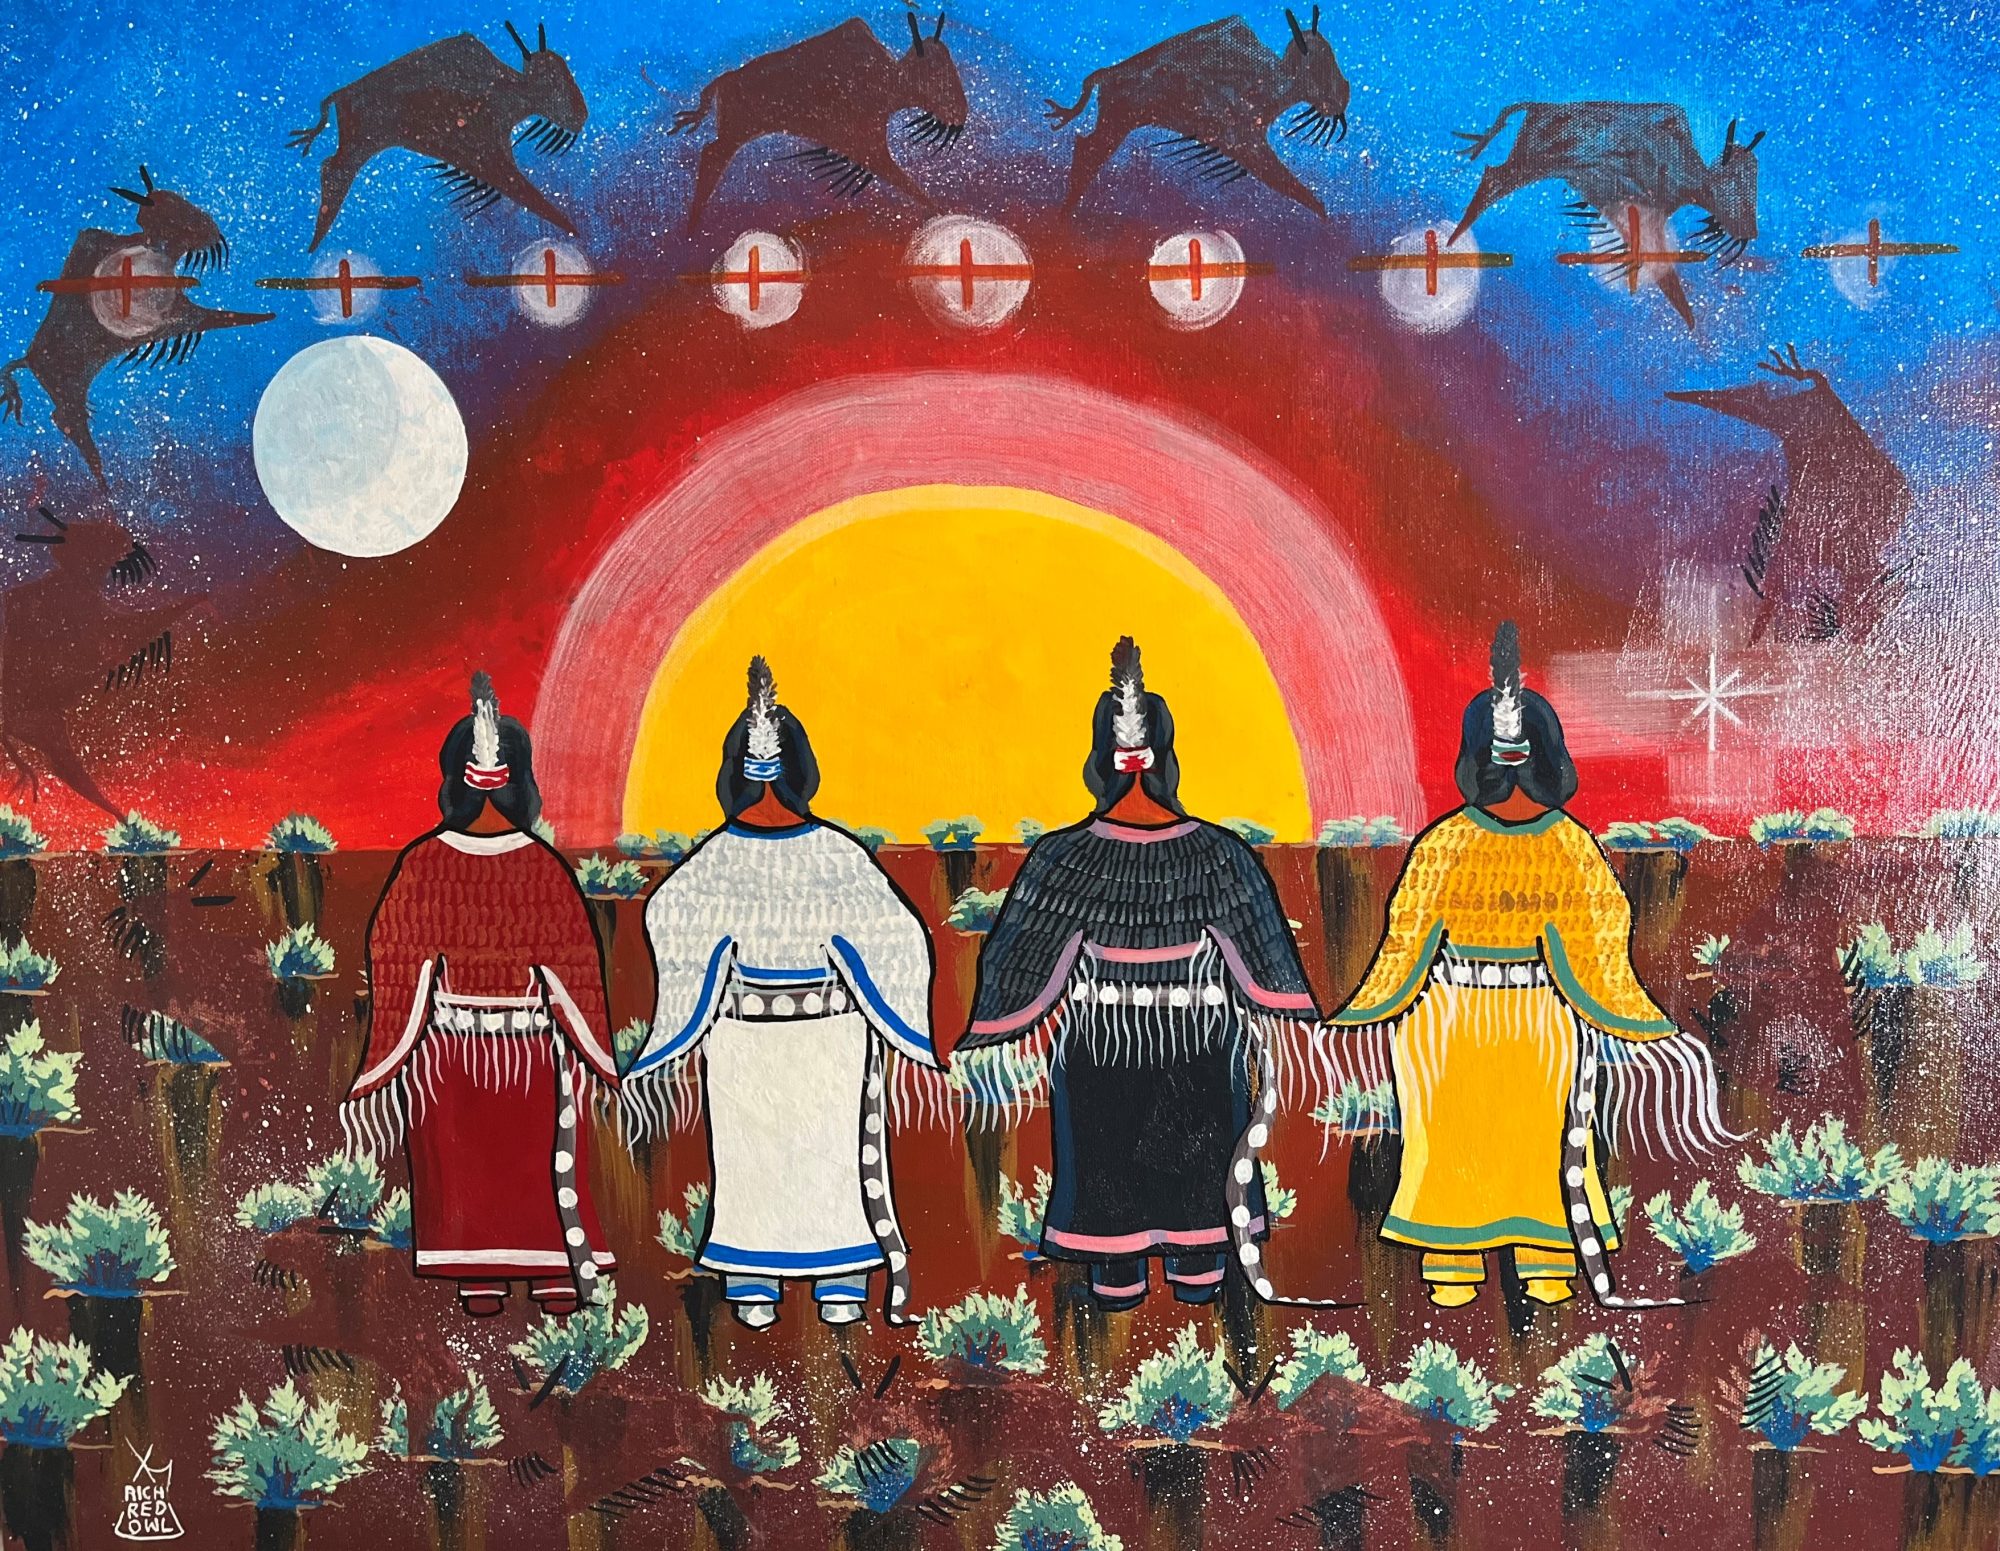 Last of the Lakotah Dream Catchers: The Art of Roger Broer & Richard Red Owl